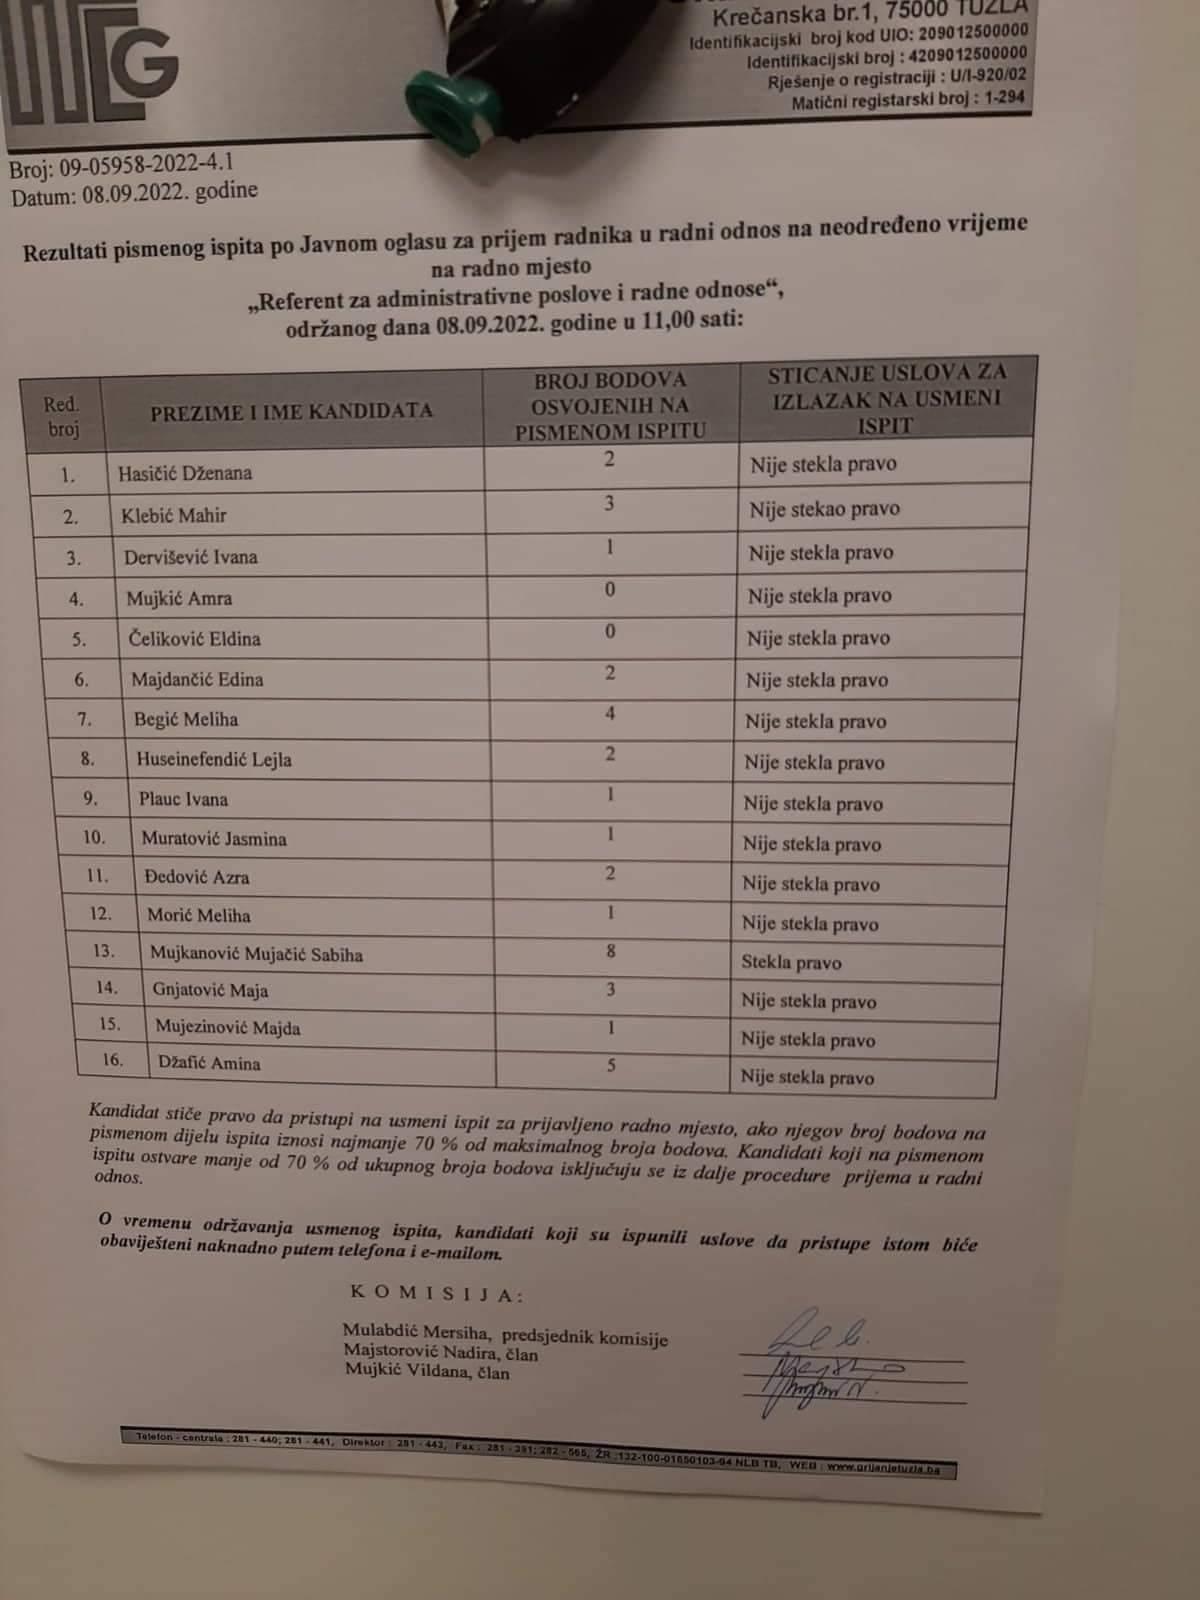 Sabiha Mujkanović Mujačić: Jedina od 16 kandidata zadovoljila na pismenom testiranju - Avaz